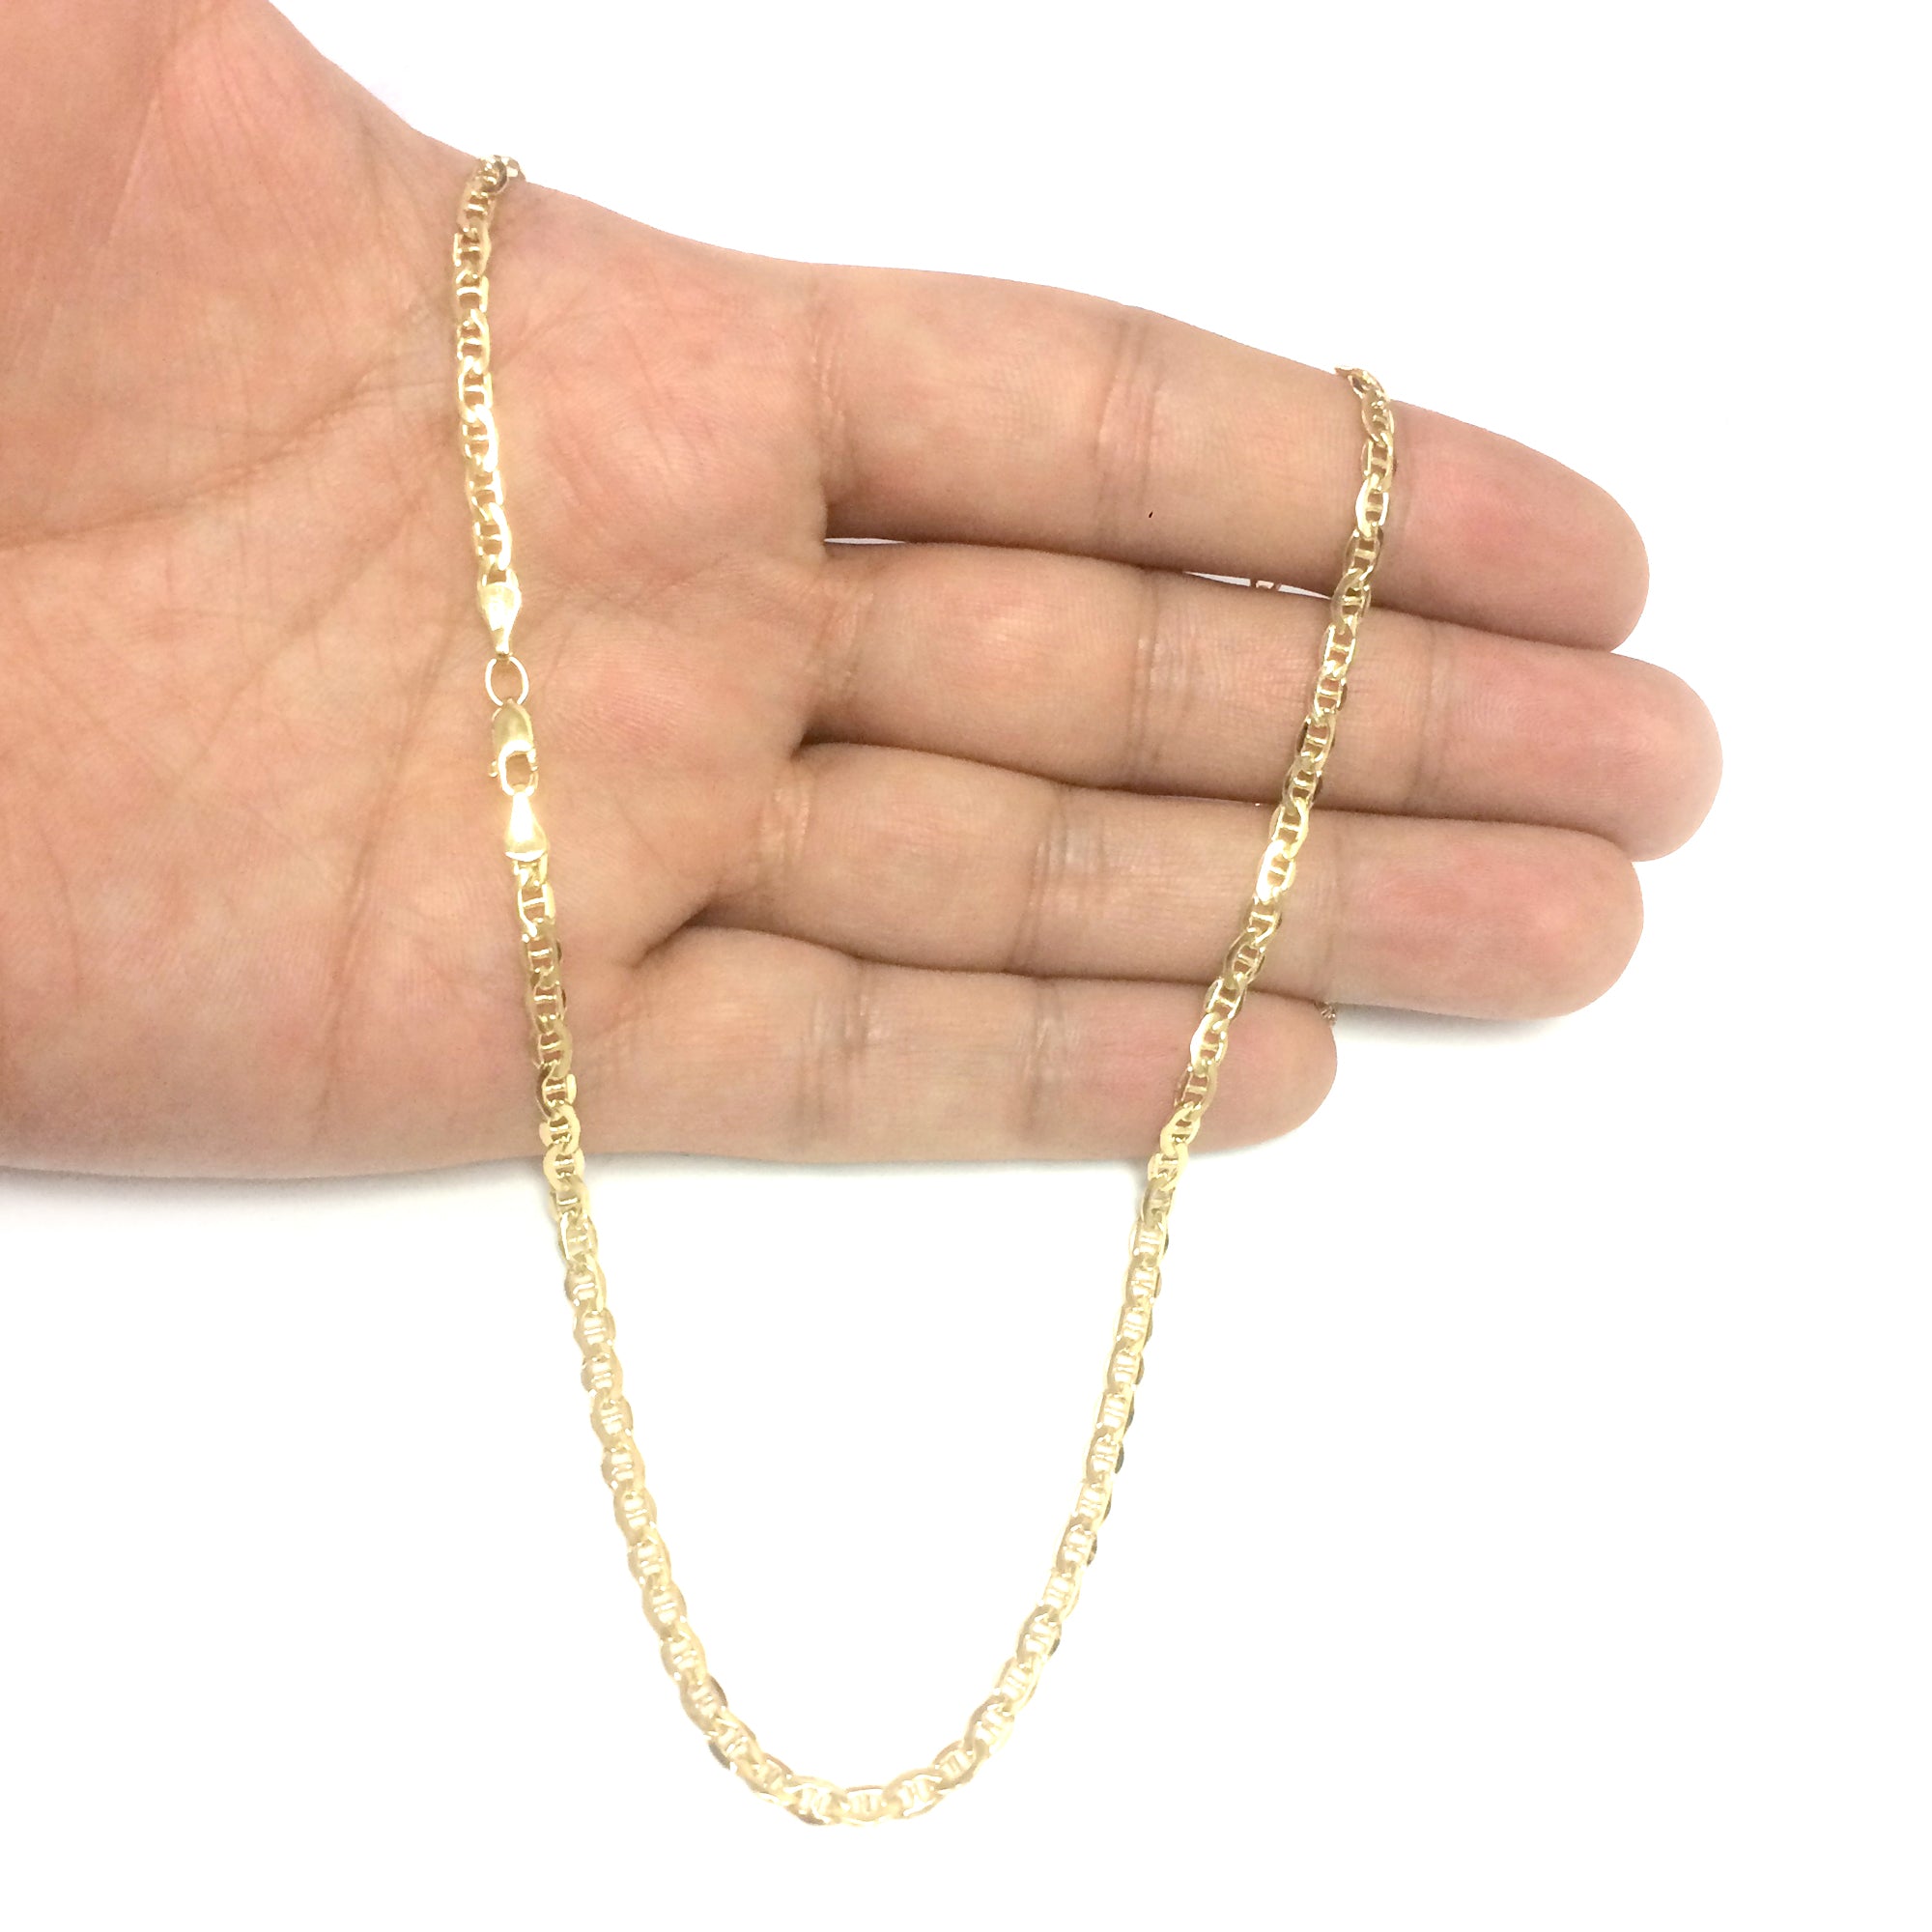 Collar de cadena marinera sólida con relleno de oro amarillo de 14 quilates, joyería fina de diseño de 3,2 mm de ancho para hombres y mujeres